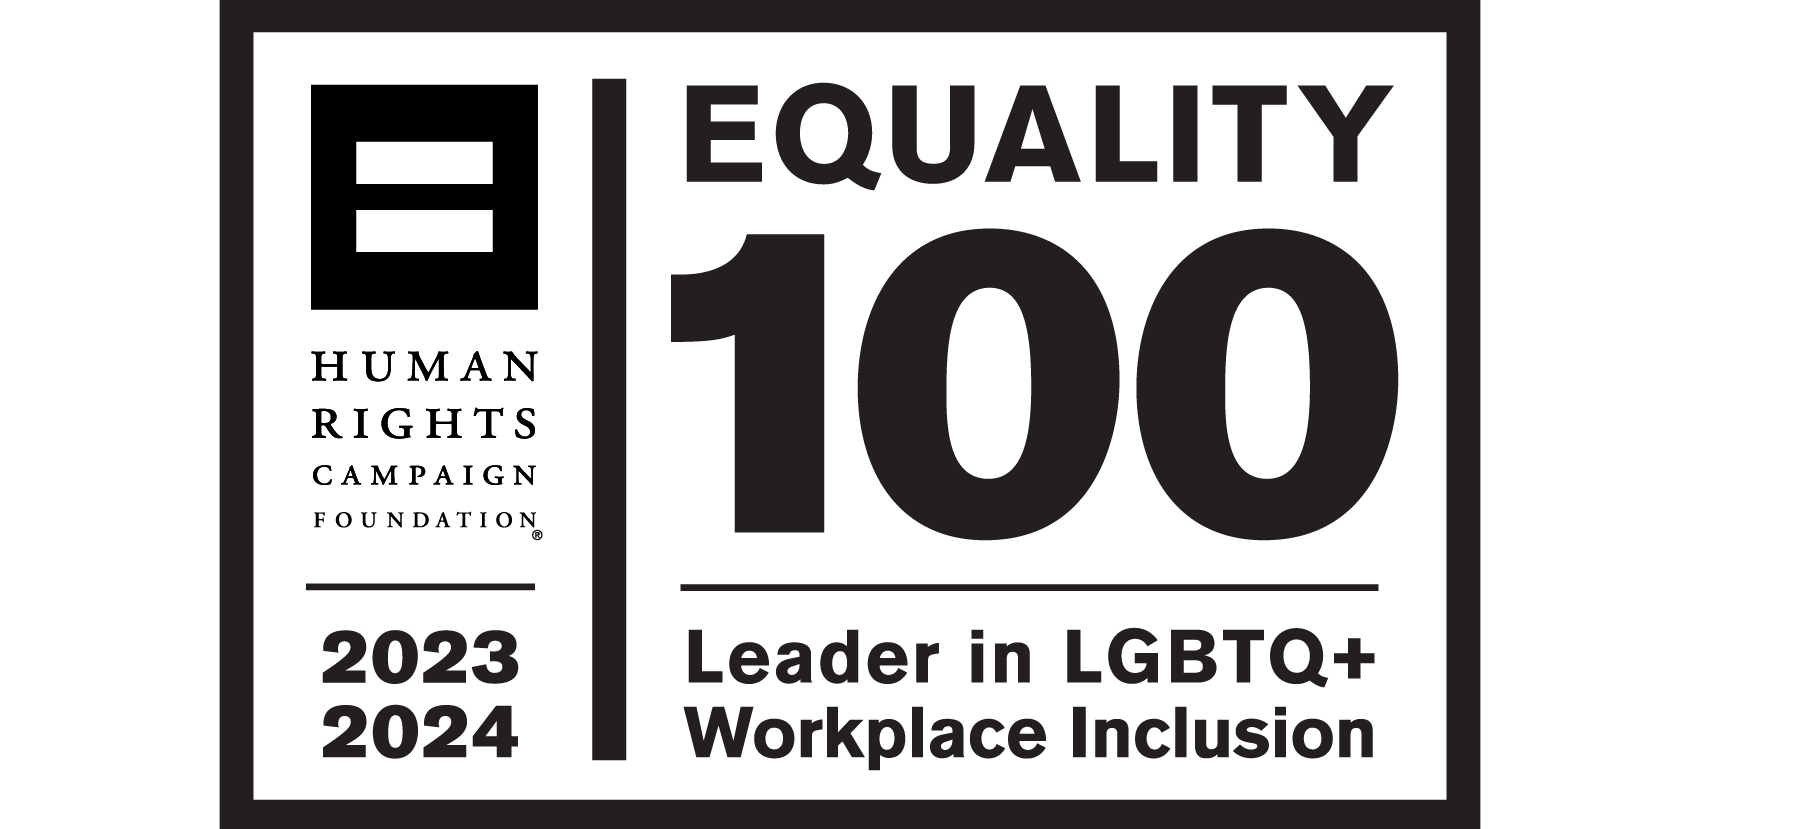 CEI Equality Logo D&I Awards